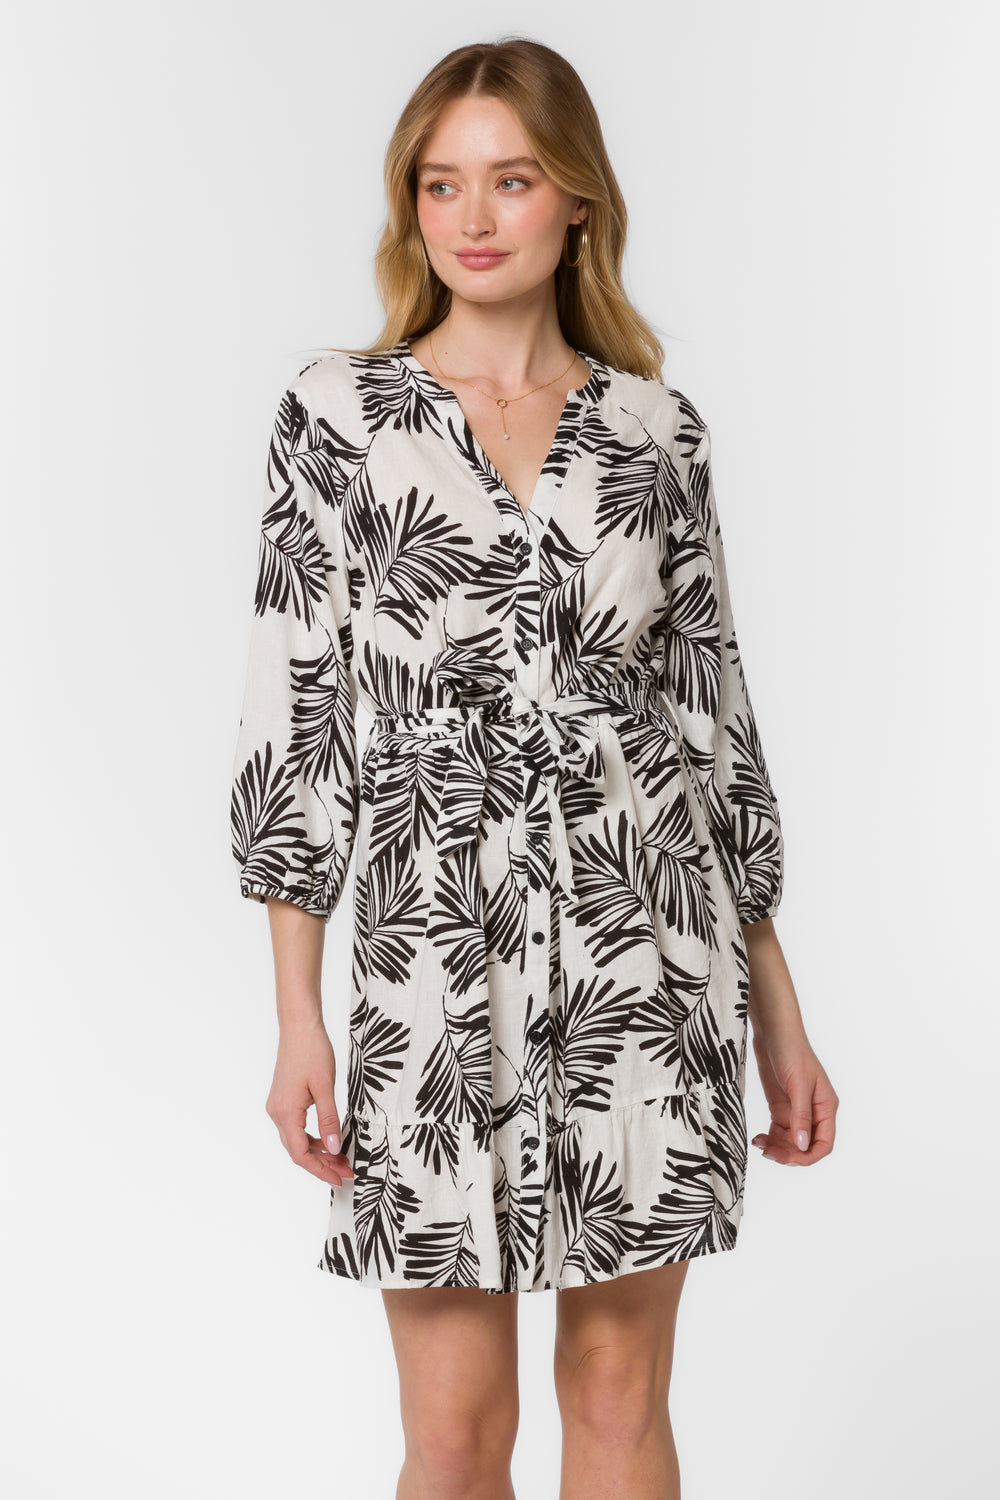 Hamilton Black Palm Leaf Dress - Dresses - Velvet Heart Clothing